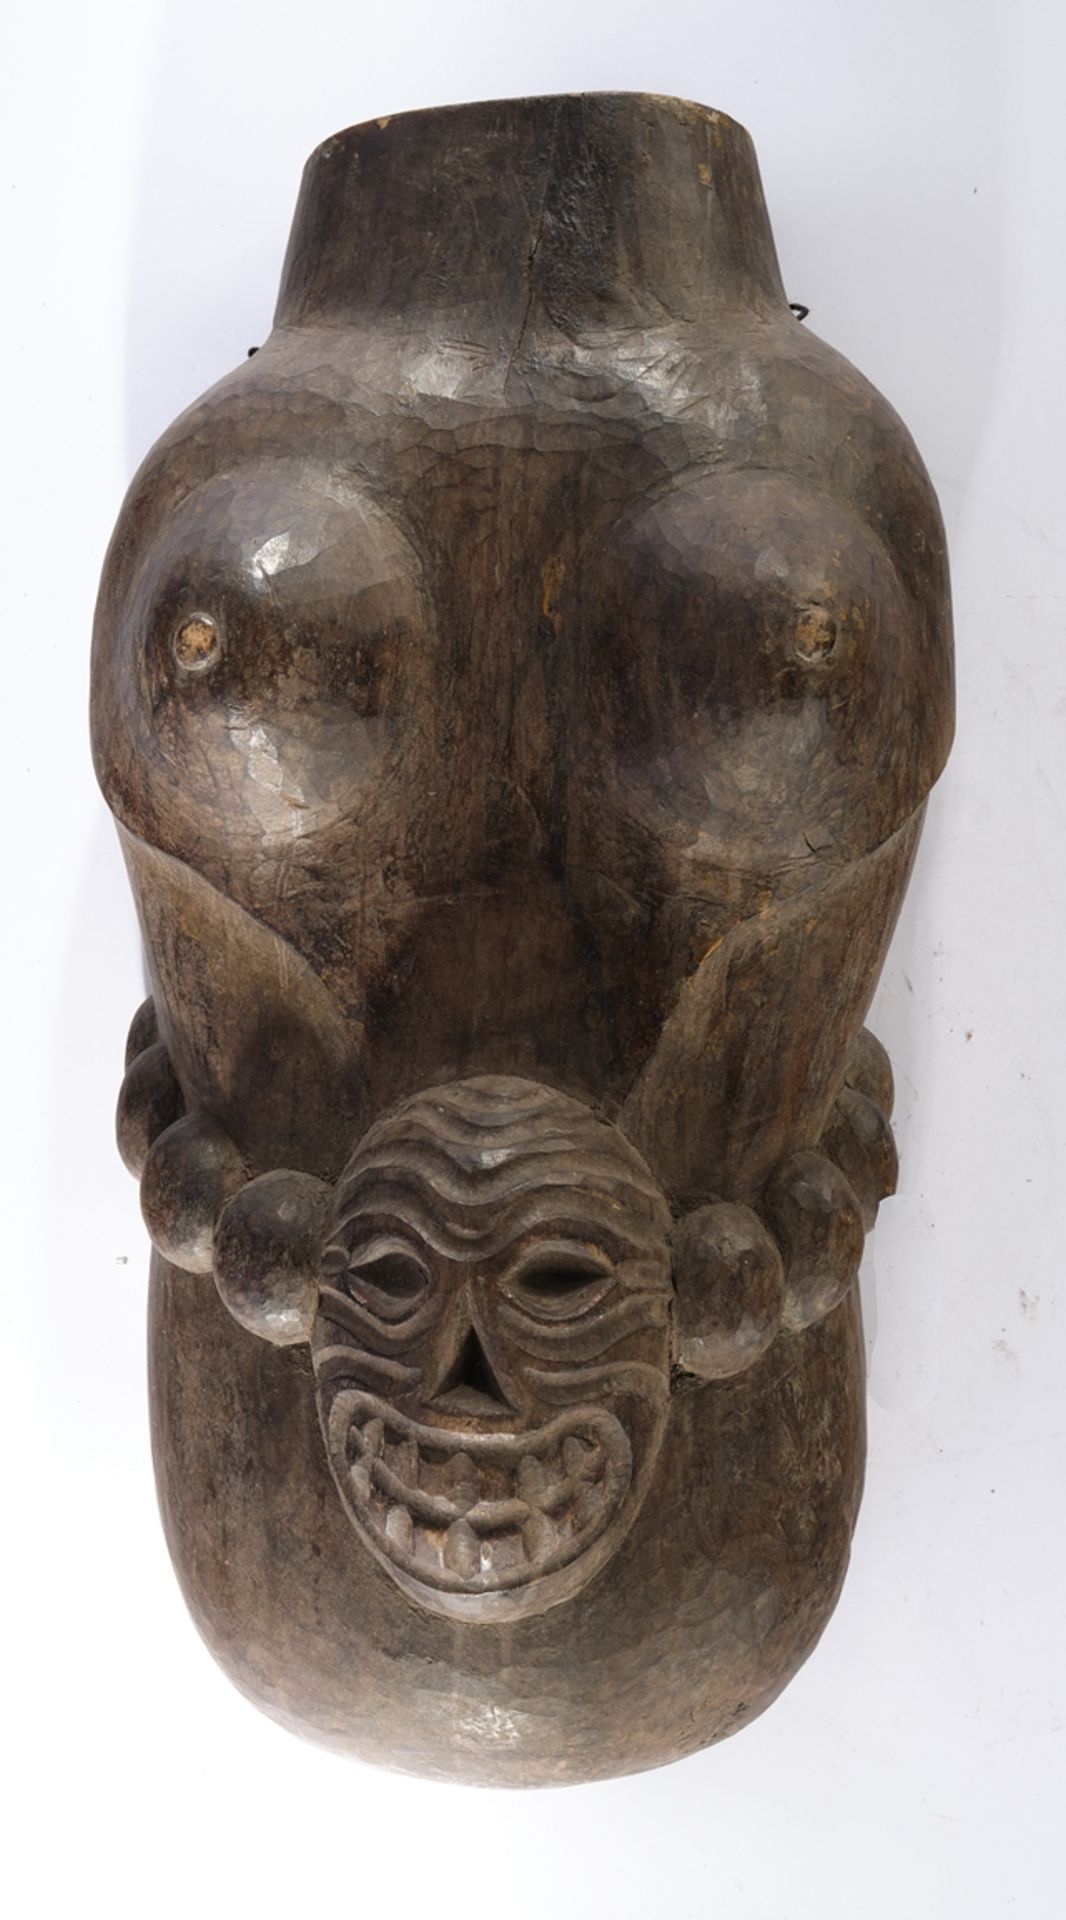 Leibmaske, weiblich, Makonde, Tansania, Afrika, Holz, braun, Bauchkette mit Totenkopf, geschnitzt, 